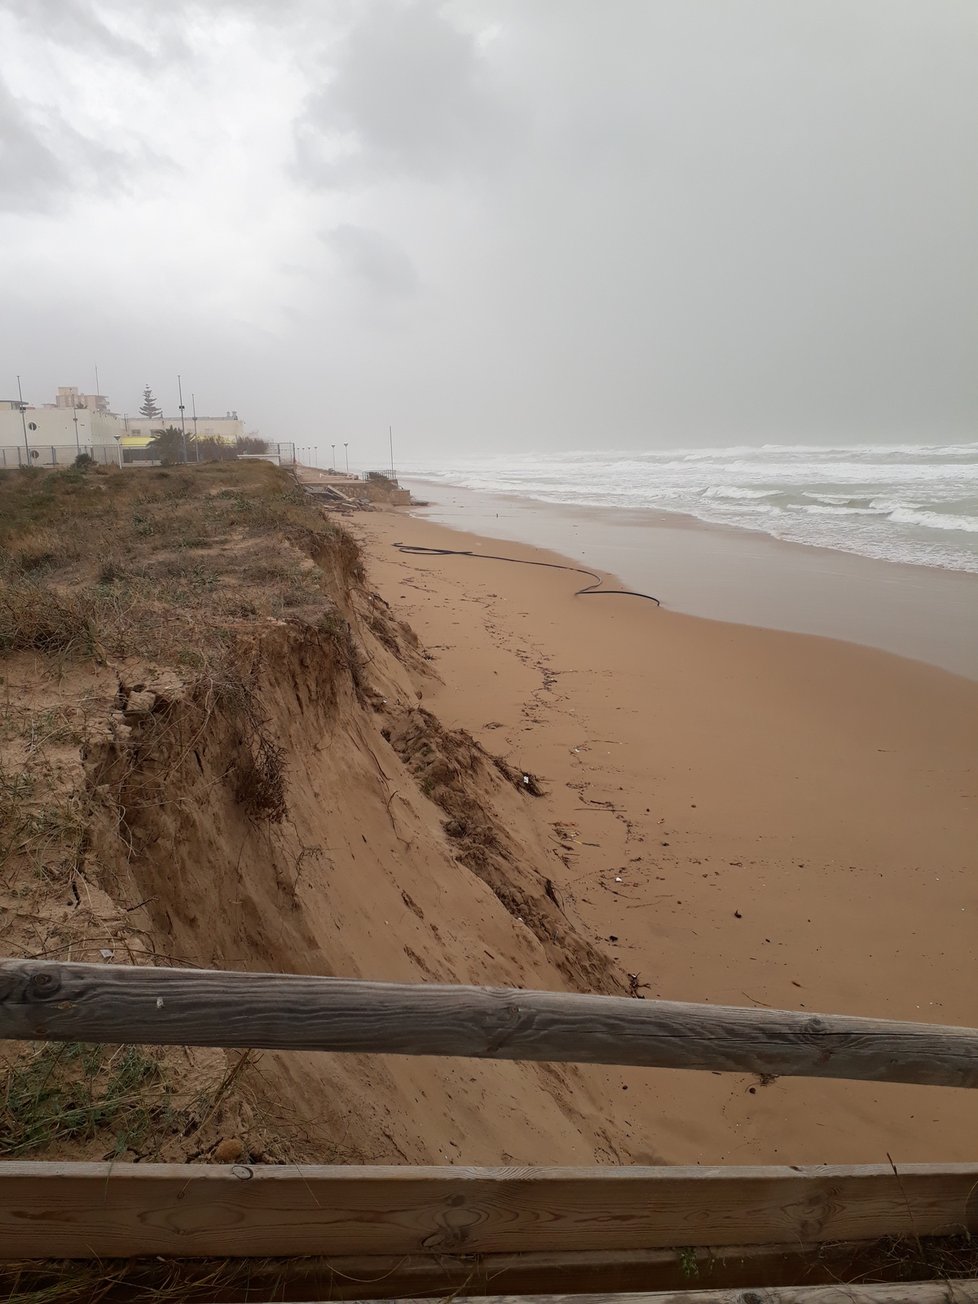 Z pláží zmizela dvoumetrová vrstva písku, místo ní jsou mrtvé ryby, které vyvrhlo moře